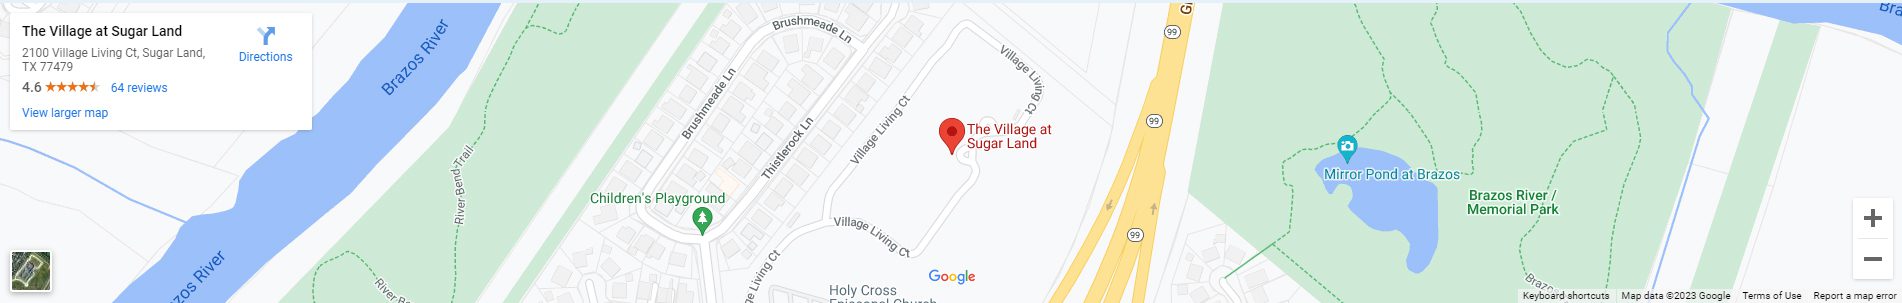 Village At Sugar Land Location.